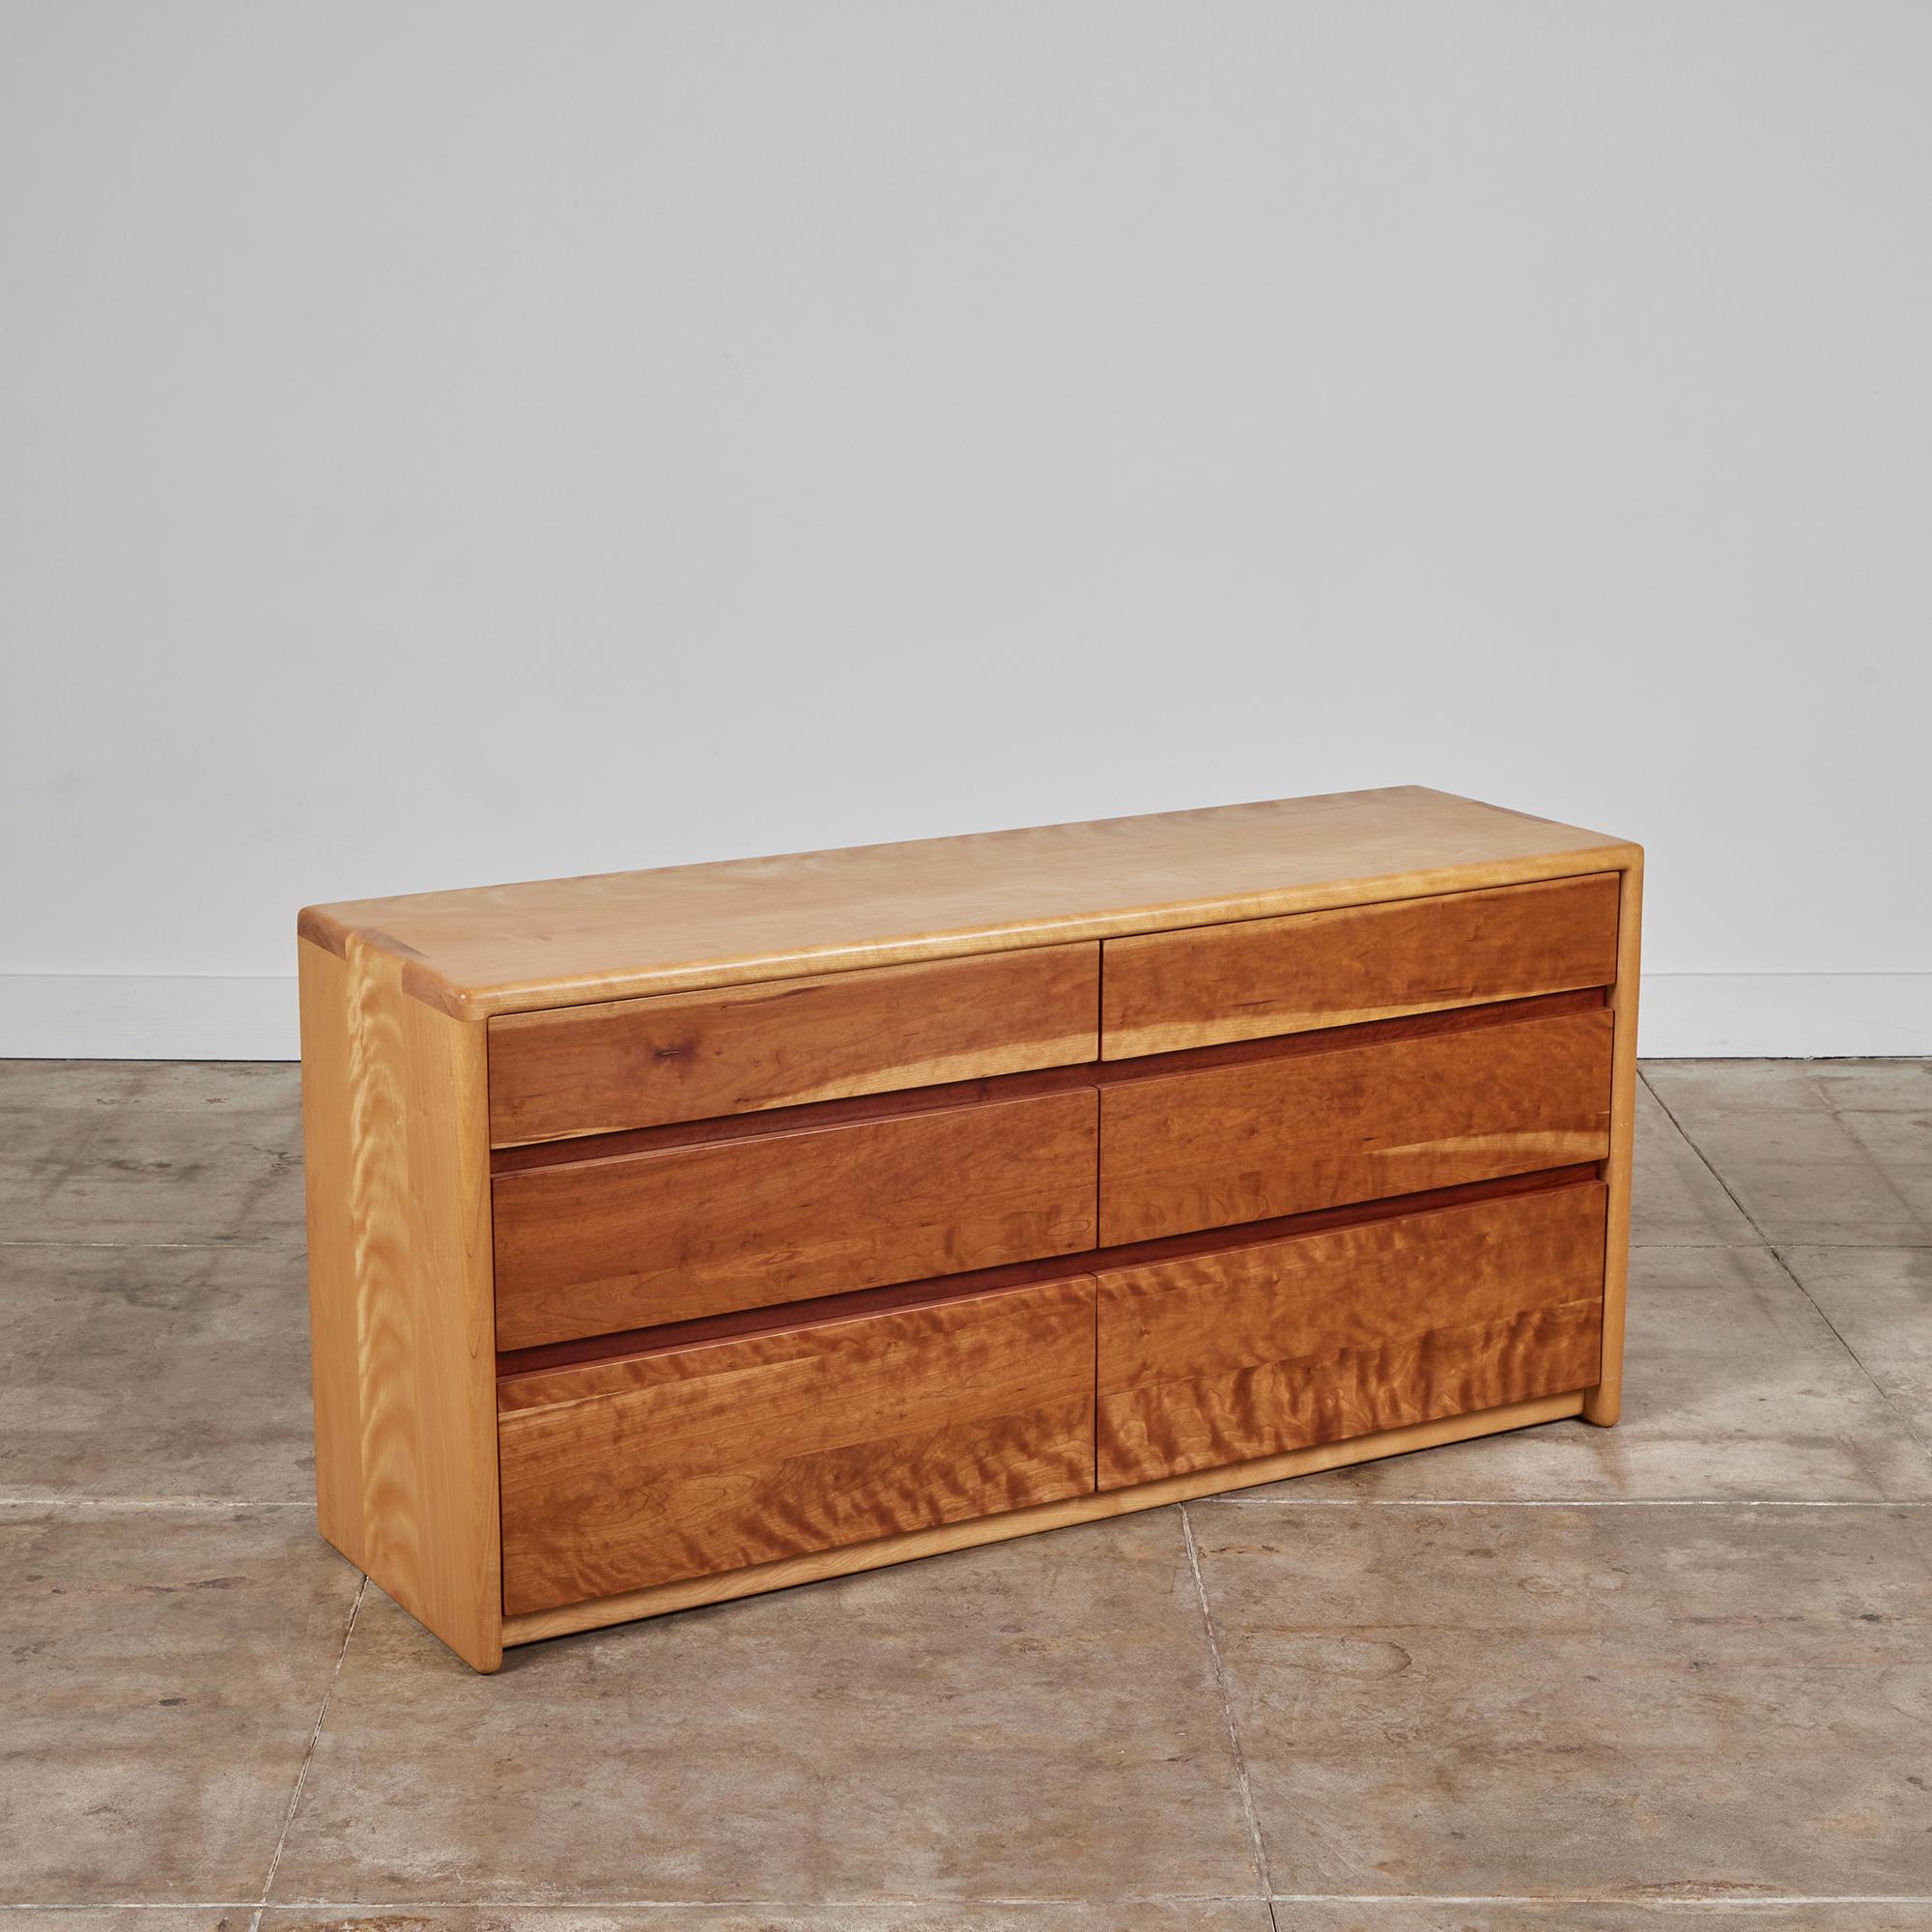 Kommode von Gerald McCabe für Eon Furniture, ca. 1997, USA. Die Kommode aus Ahornholz hat weiche, abgerundete Kanten mit Keilzinkenverzierungen an den Rändern. Die sechs Schubladen mit flacher Front sind aus Shedua-Holz. Dieses Stück ist von McCabe